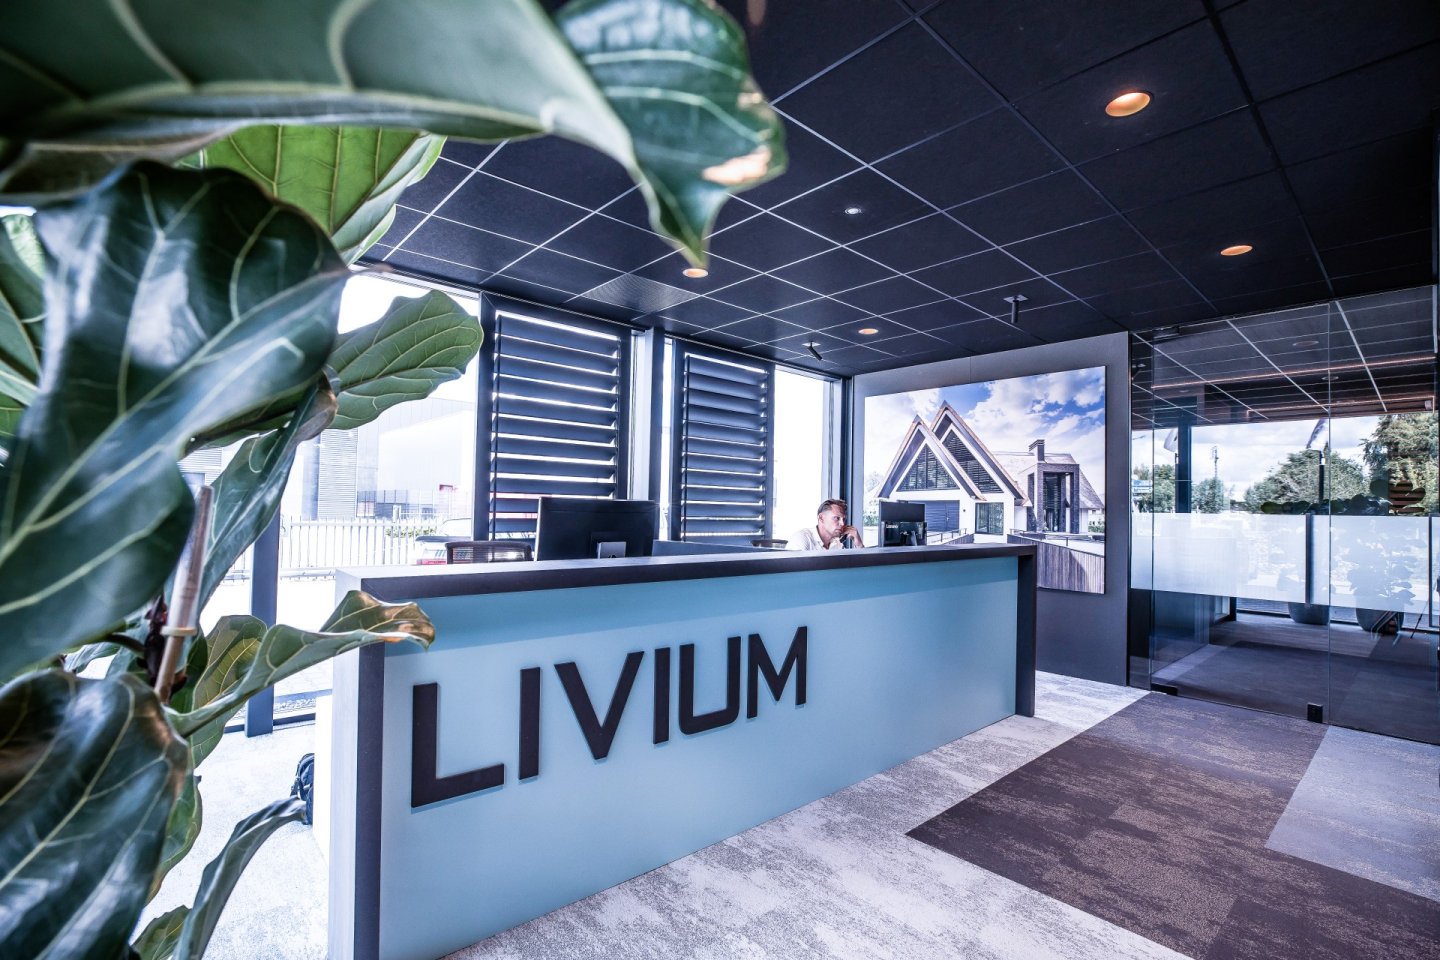 Livium contact